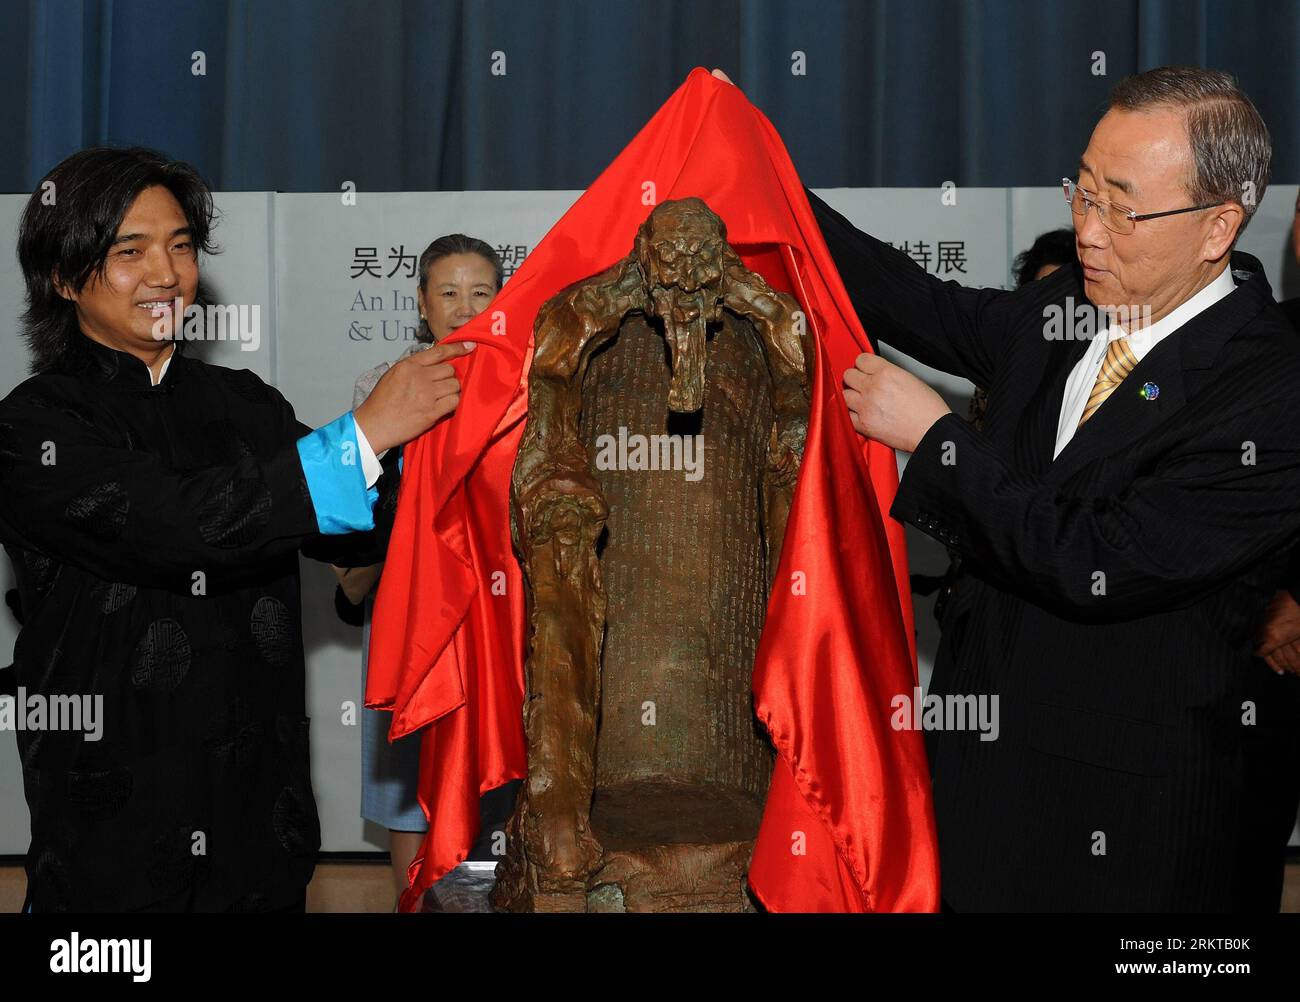 Bildnummer : 58432620 Datum : 05.09.2012 Copyright : imago/Xinhua (120905) -- NEW YORK, 5 septembre 2012 (Xinhua) -- le sculpteur chinois renommé Wu Weishan (G) présente sa sculpture en bronze nommée Lao Tzu au Secrétaire général de l'ONU Ban Ki-moon en cadeau au siège de l'ONU à New York, aux États-Unis, le 5 septembre 2012. Organisé par le Ministère chinois de la Culture et la Mission permanente chinoise auprès de l'ONU, Sculpter l'âme d'une nation - une exposition touristique internationale de l'art de Wu Weishan¤exposition spéciale aux Nations Unies a débuté mardi.(Xinhua/Shen Hong) (srb) ONU-NEW y Banque D'Images